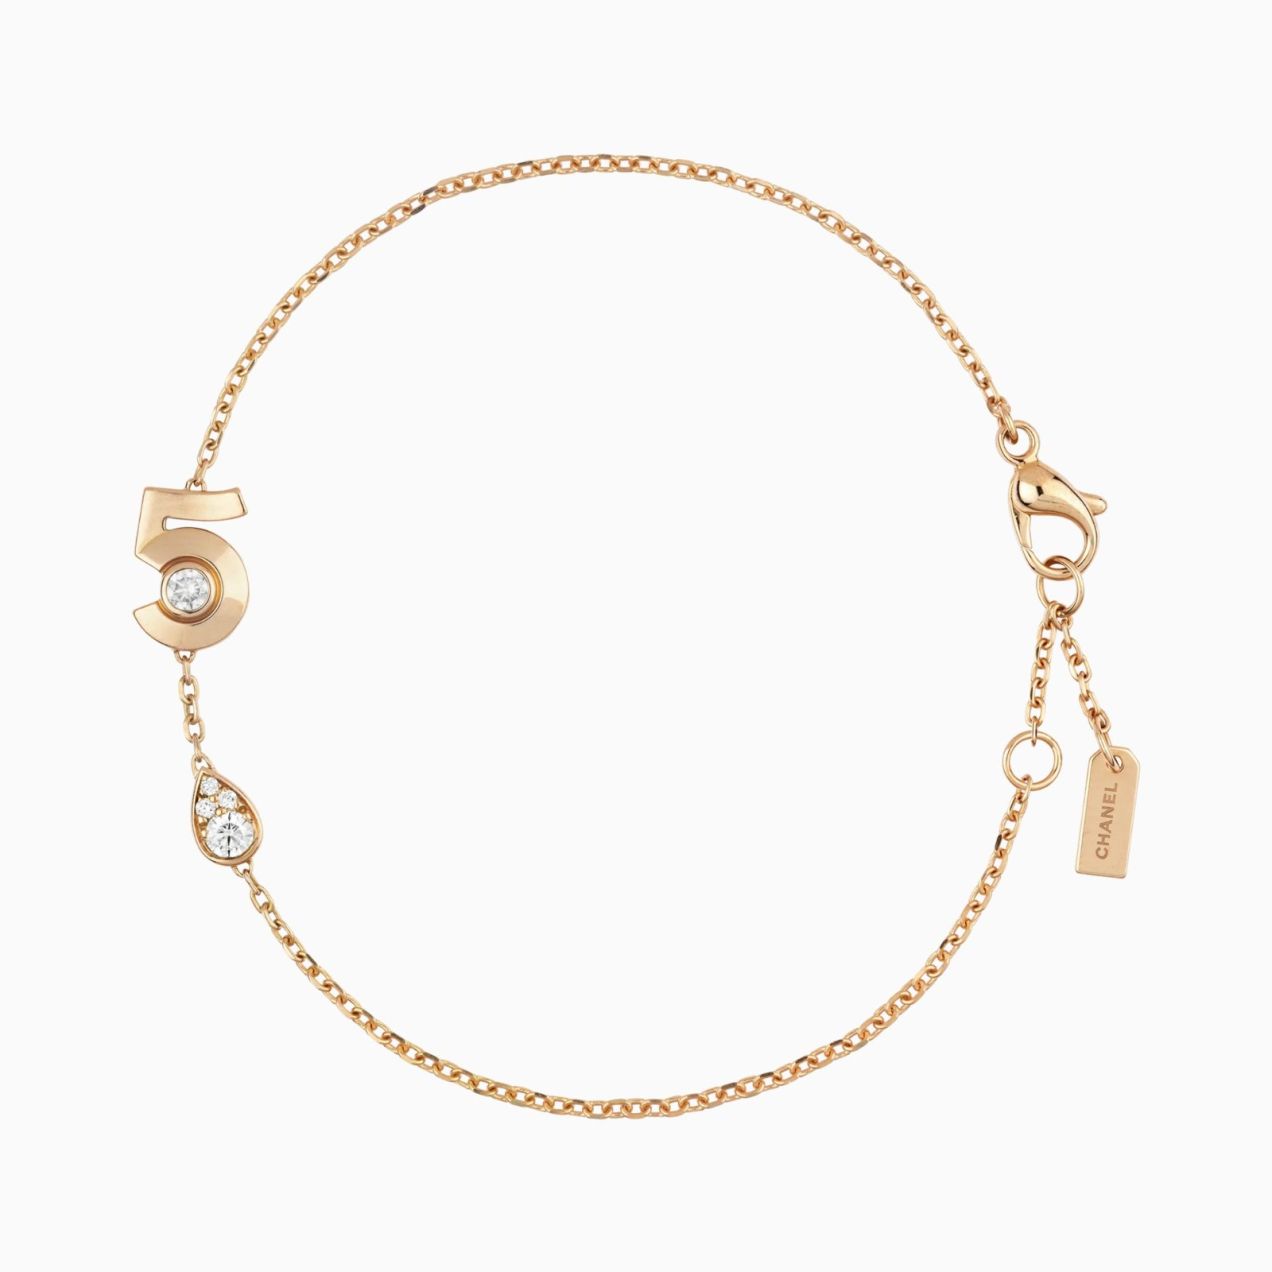 Bracelet CHANEL Extrait Nº5 rose gold